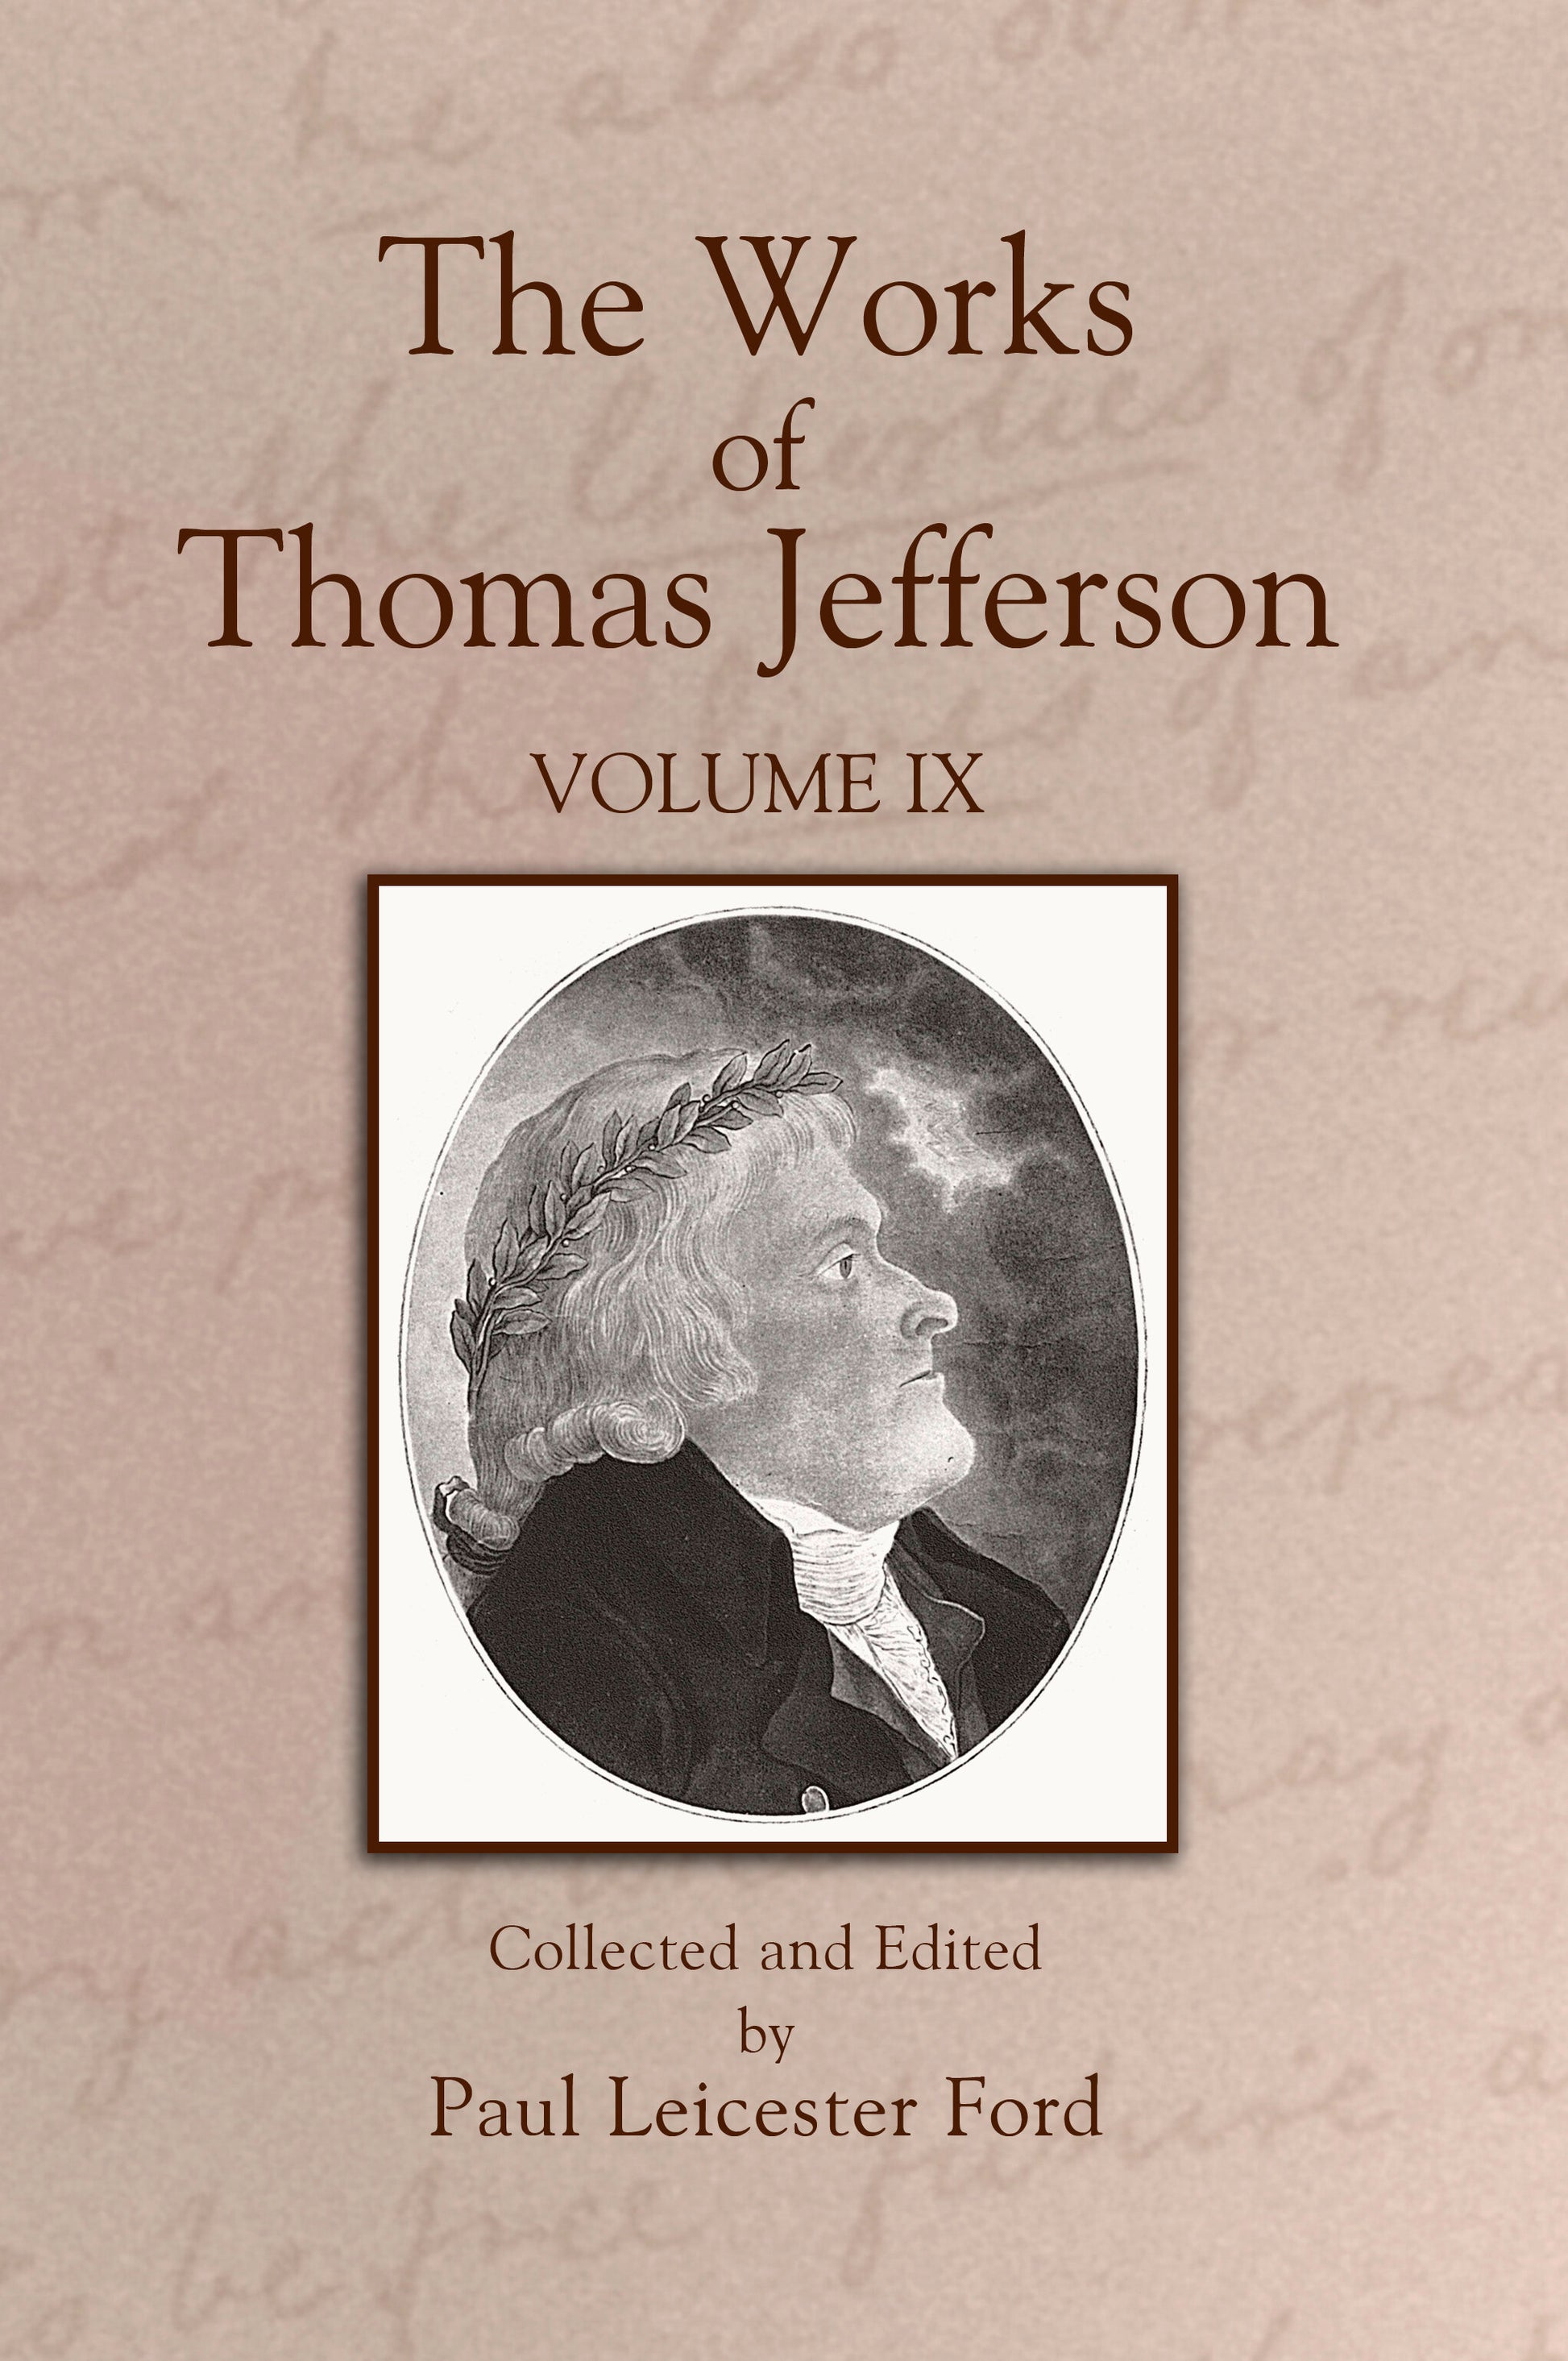 The Works of Thomas Jefferson: Volume IX